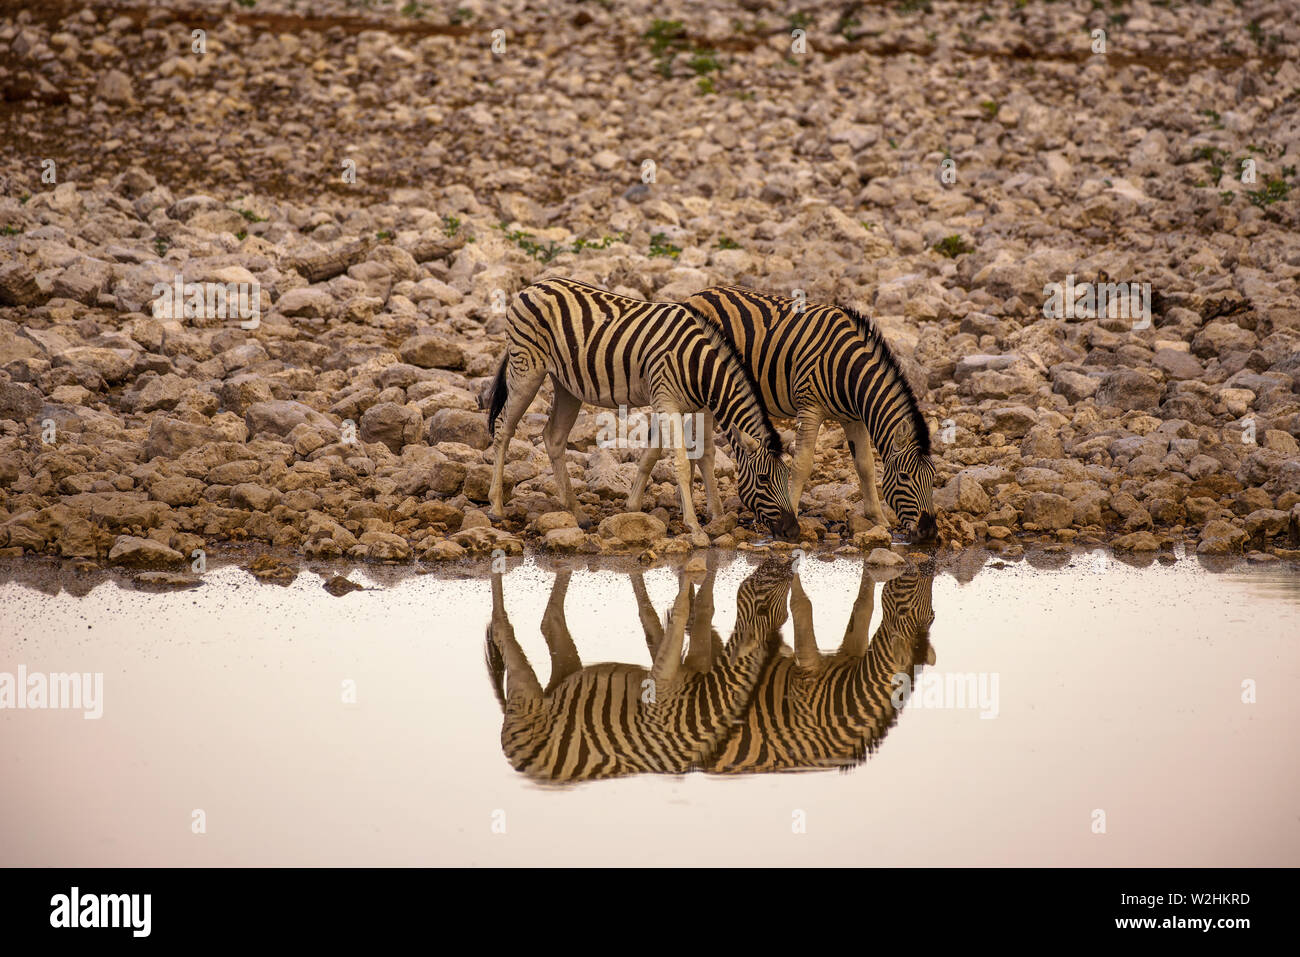 Two zebras drinking water at sunrise in Etosha National Park, Namibia Stock Photo